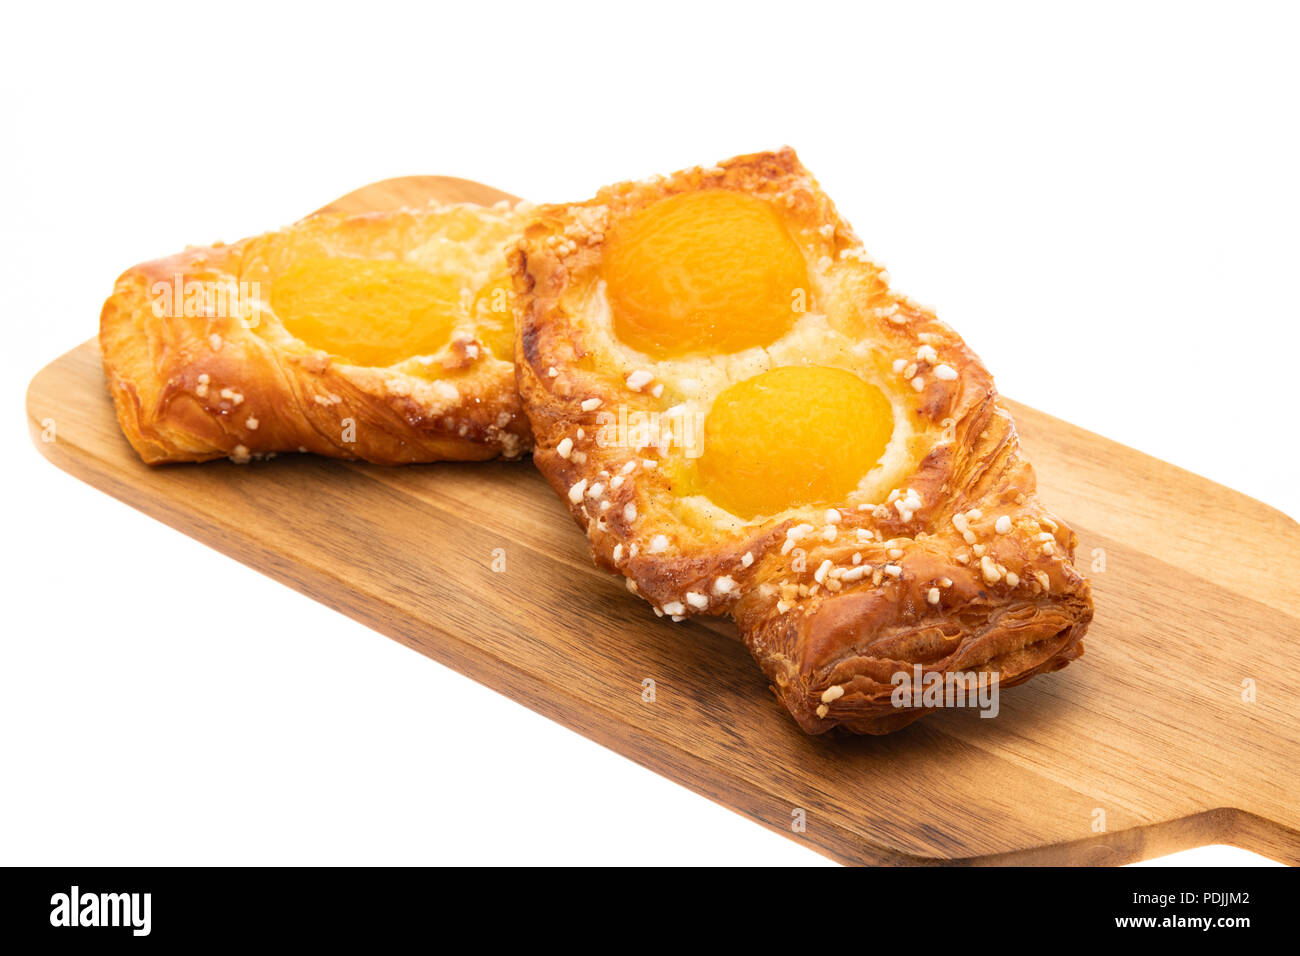 Tarte aux abricots - la pâtisserie française - Fond blanc Banque D'Images